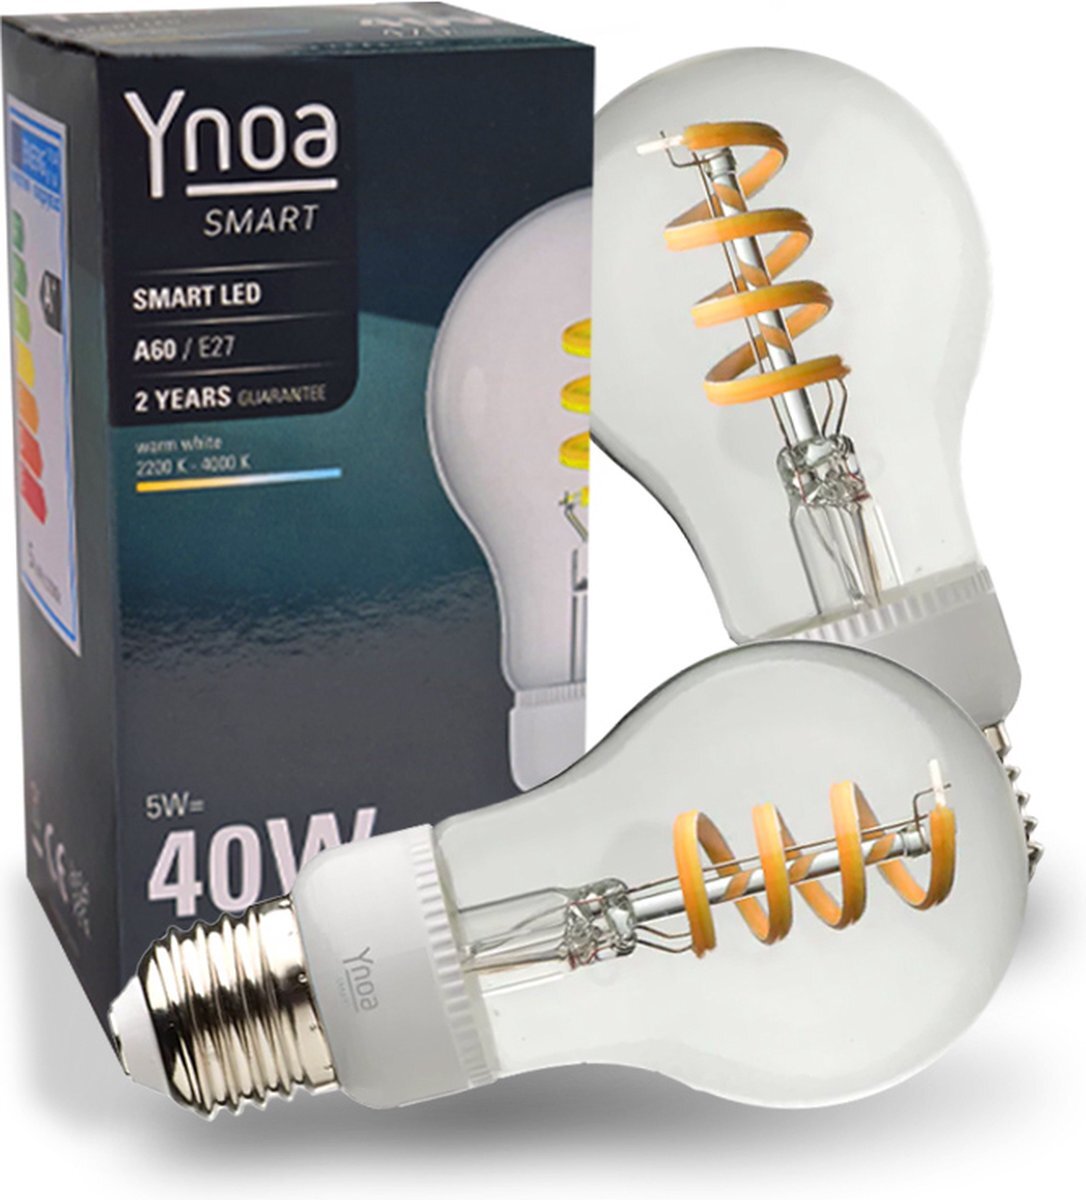 Ynoa Set van 2 Smart lampen White Tones - E27 LED lamp - Zigbee 3.0 - Filament lamp - Dimbaar - CCT - Werkt met o.a. Philips Hue en Homey